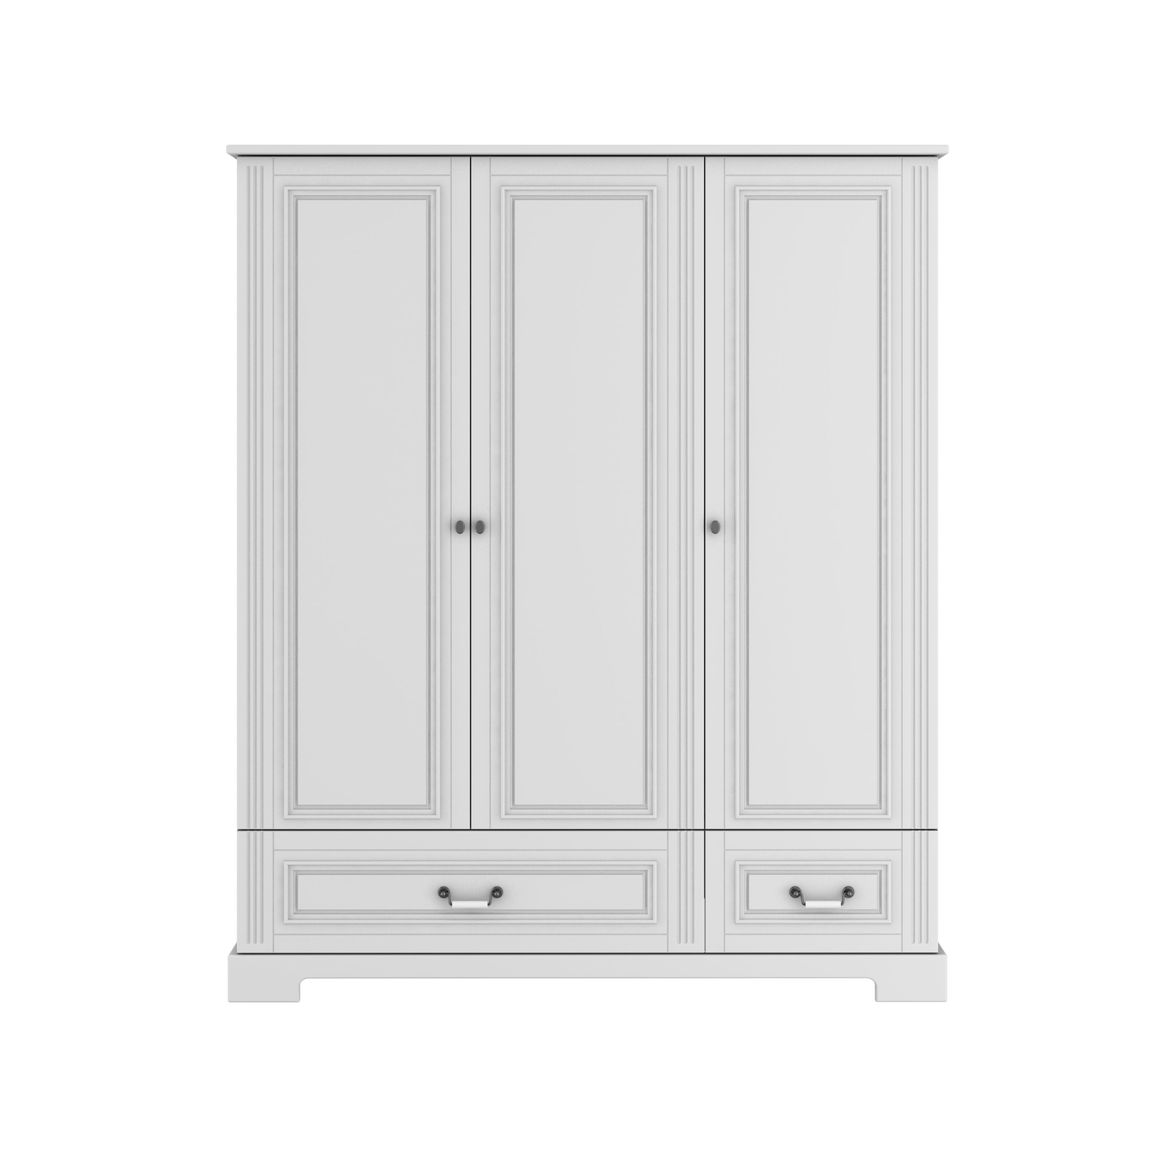 Skriňa Ines elegant white 3-dverová